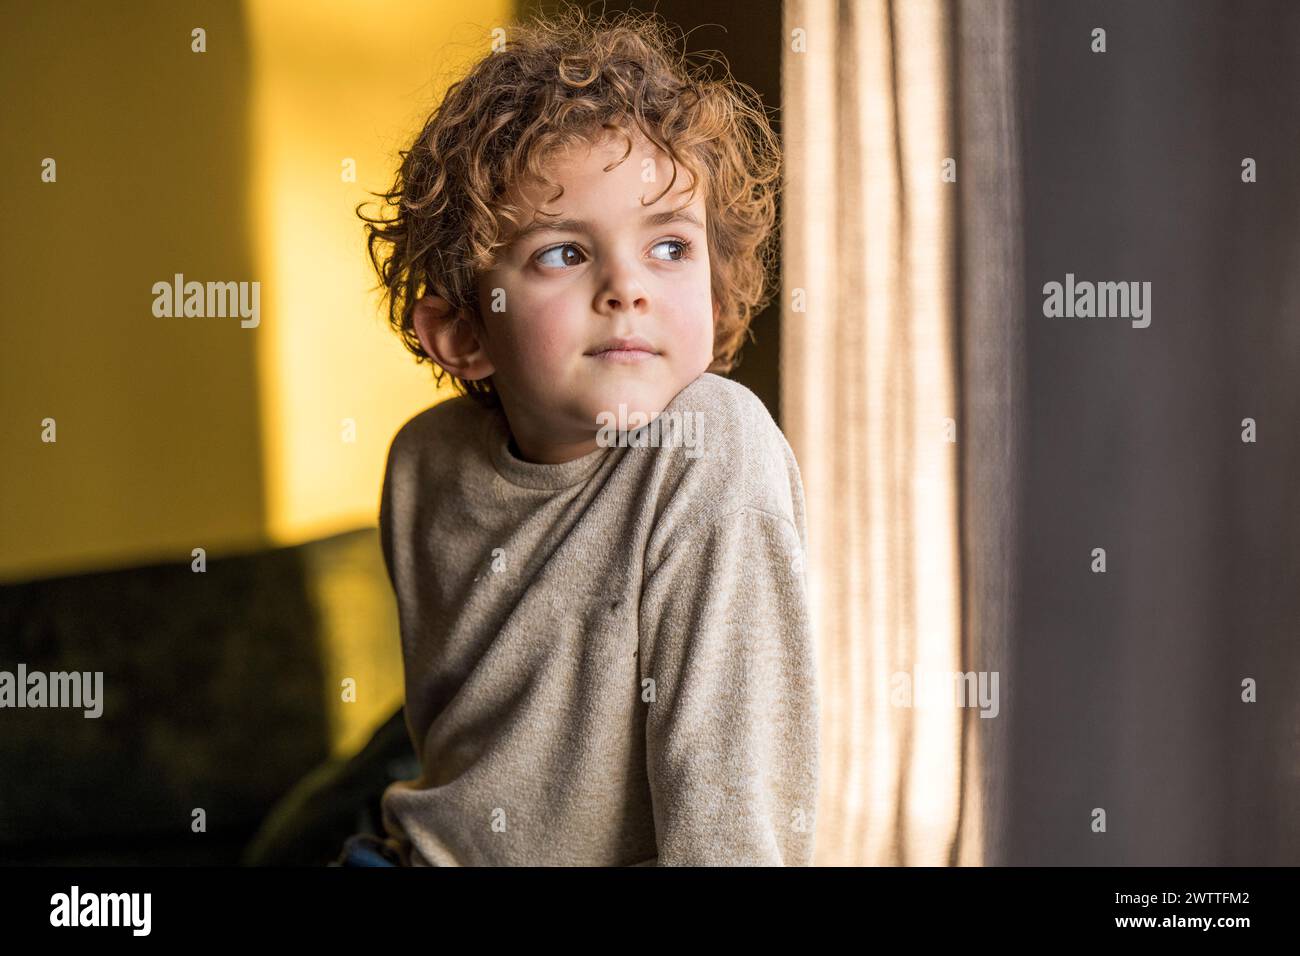 Neugieriges Kind, das mit einem nachdenklichen Ausdruck aus dem Fenster blickt. Stockfoto